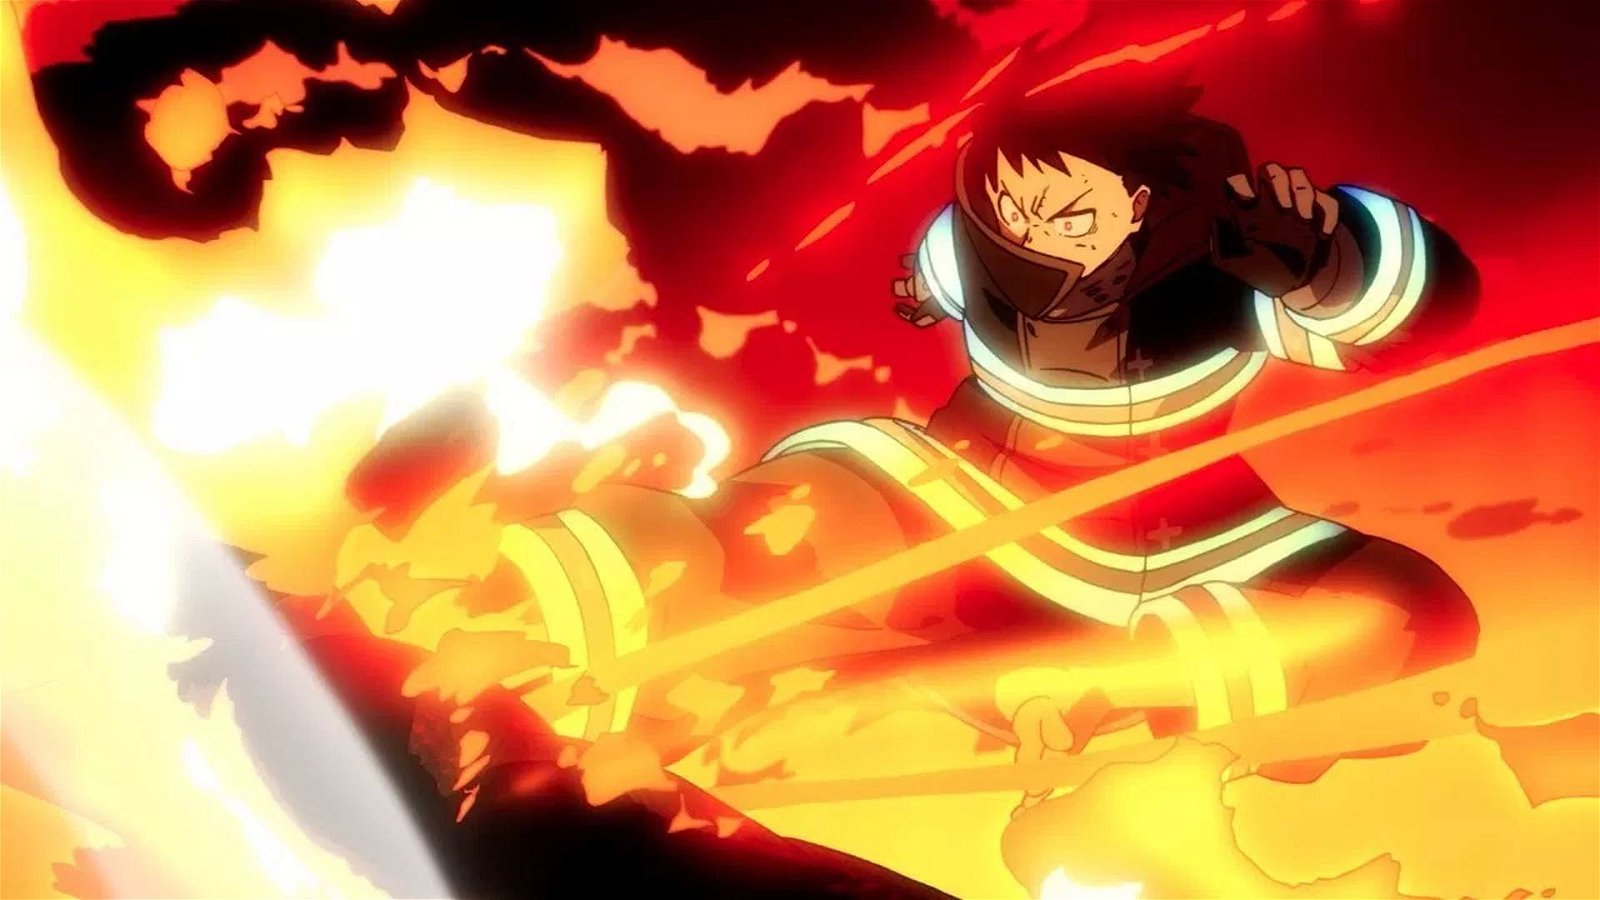 Immagine di Fire Force: il terzo episodio è stato modificato dopo l'incendio alla Kyoto Animation